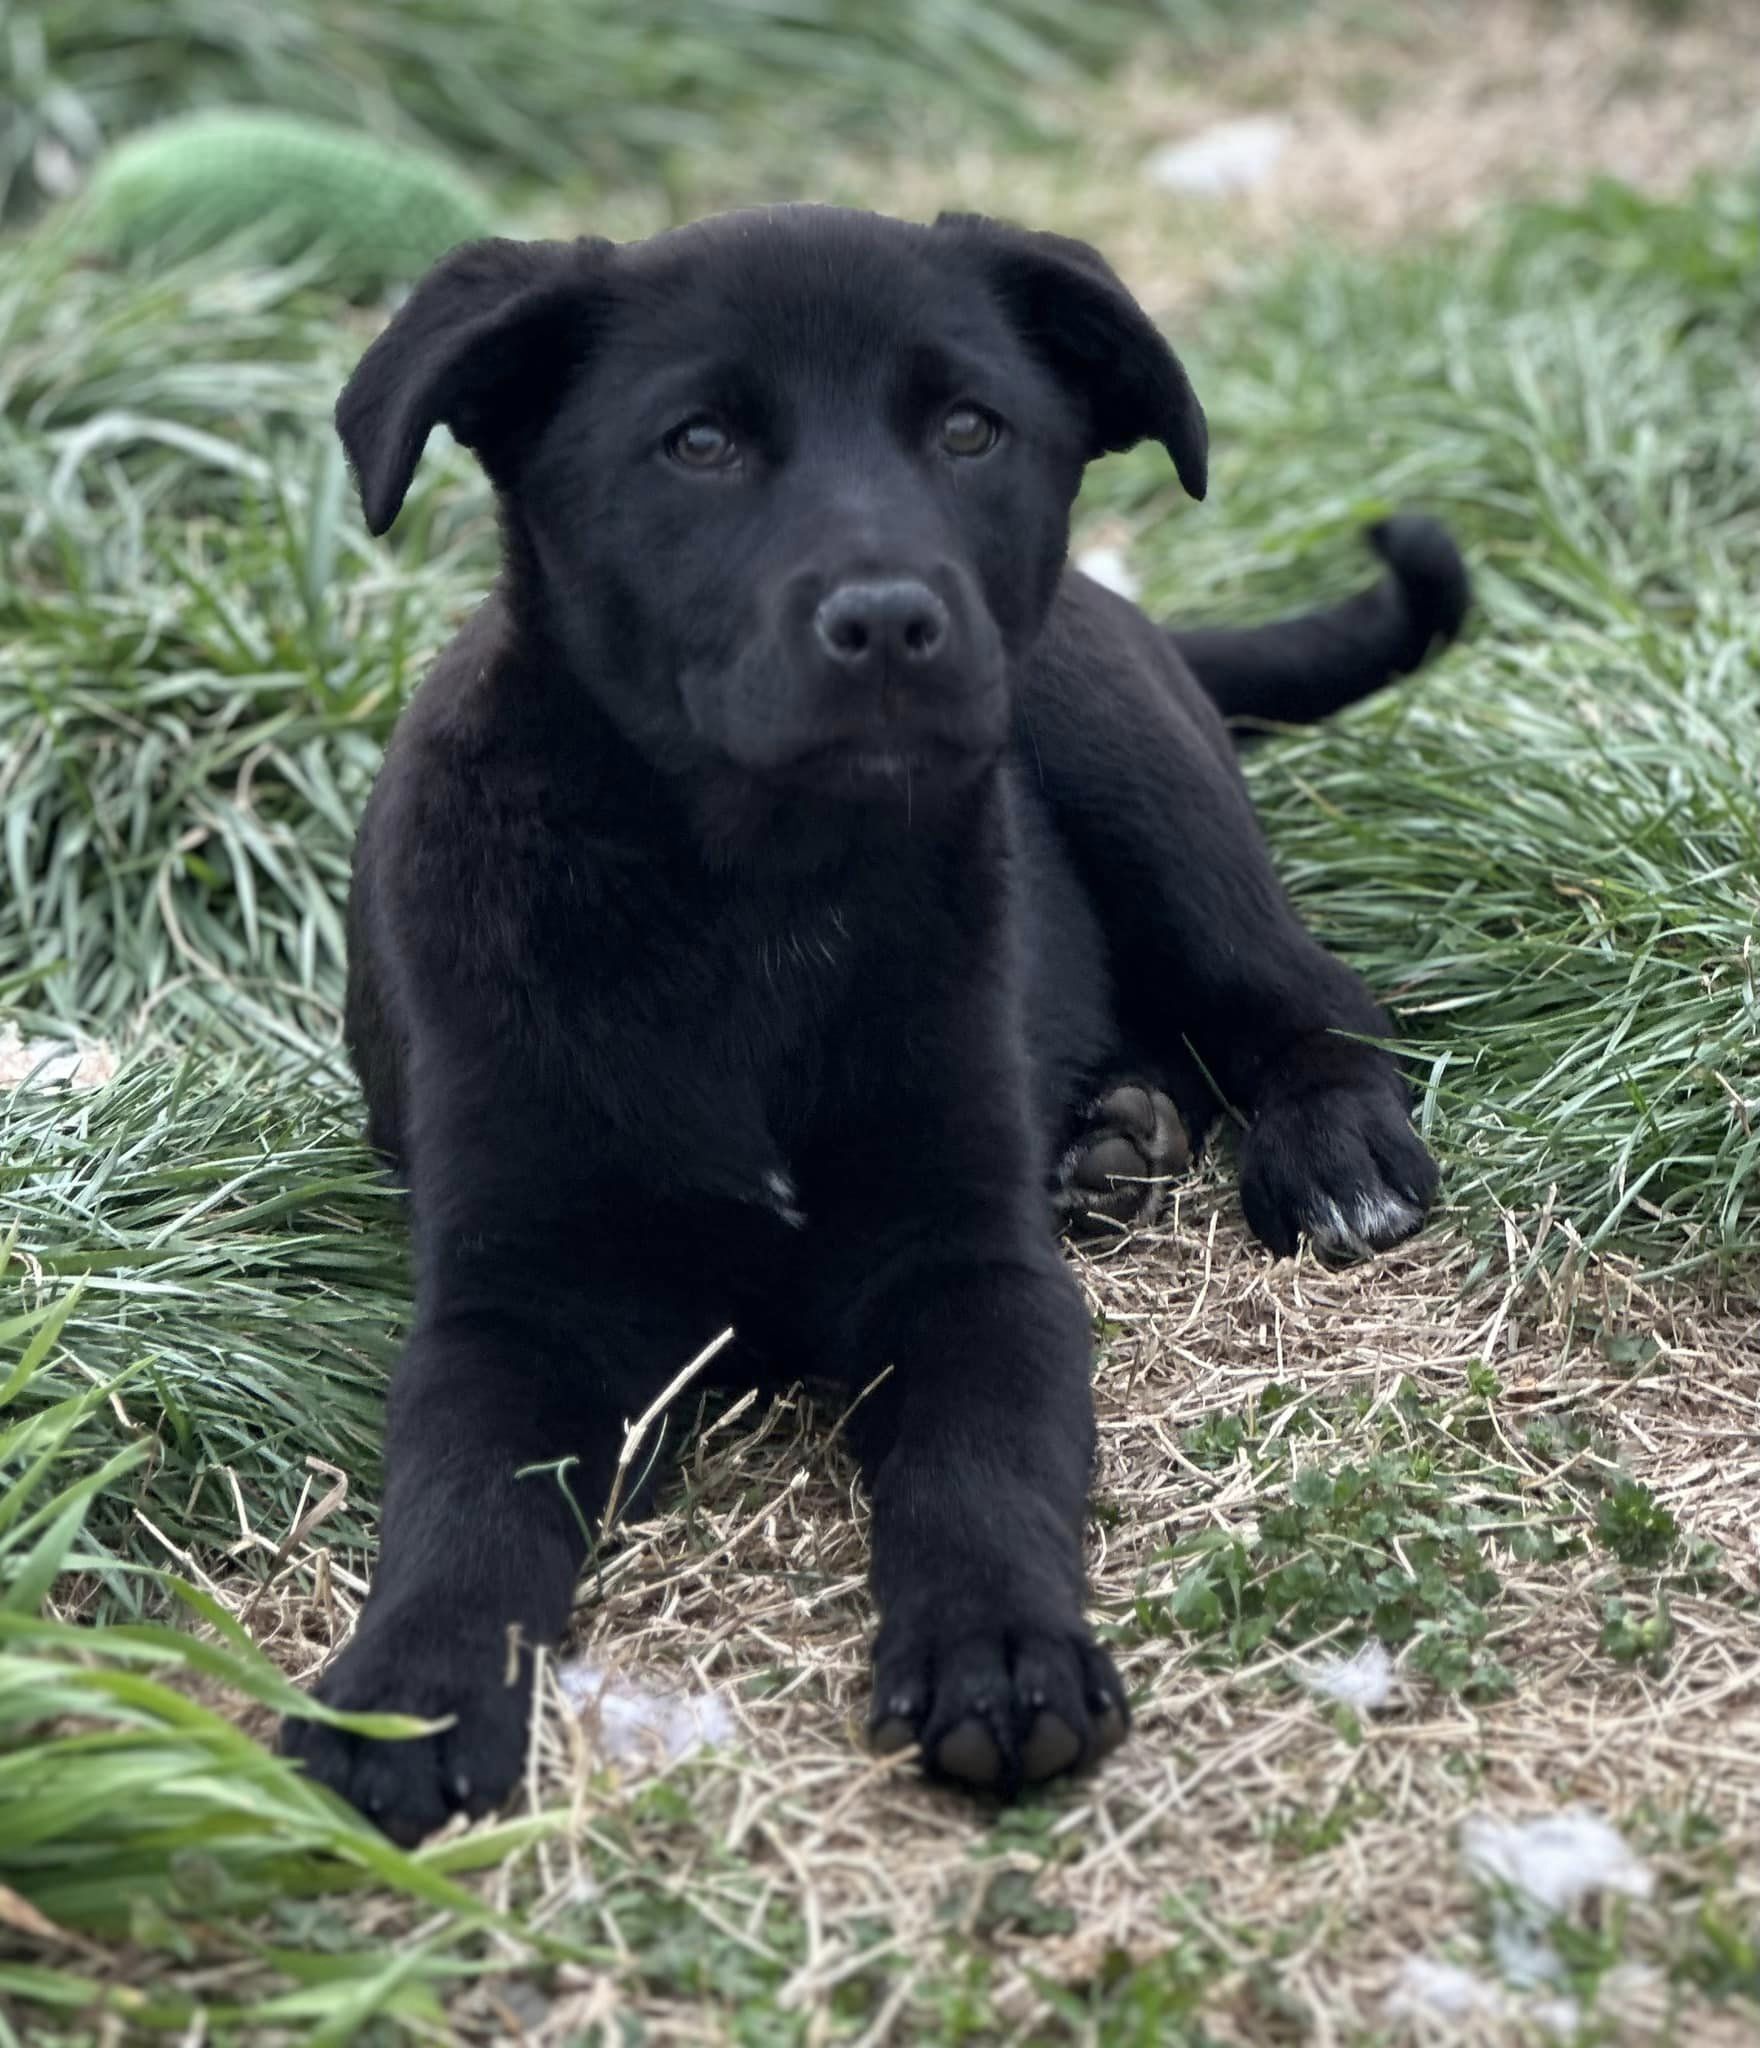 Dog for adoption - Spirit $395, a Black Labrador Retriever Mix in Seneca,  SC | Petfinder